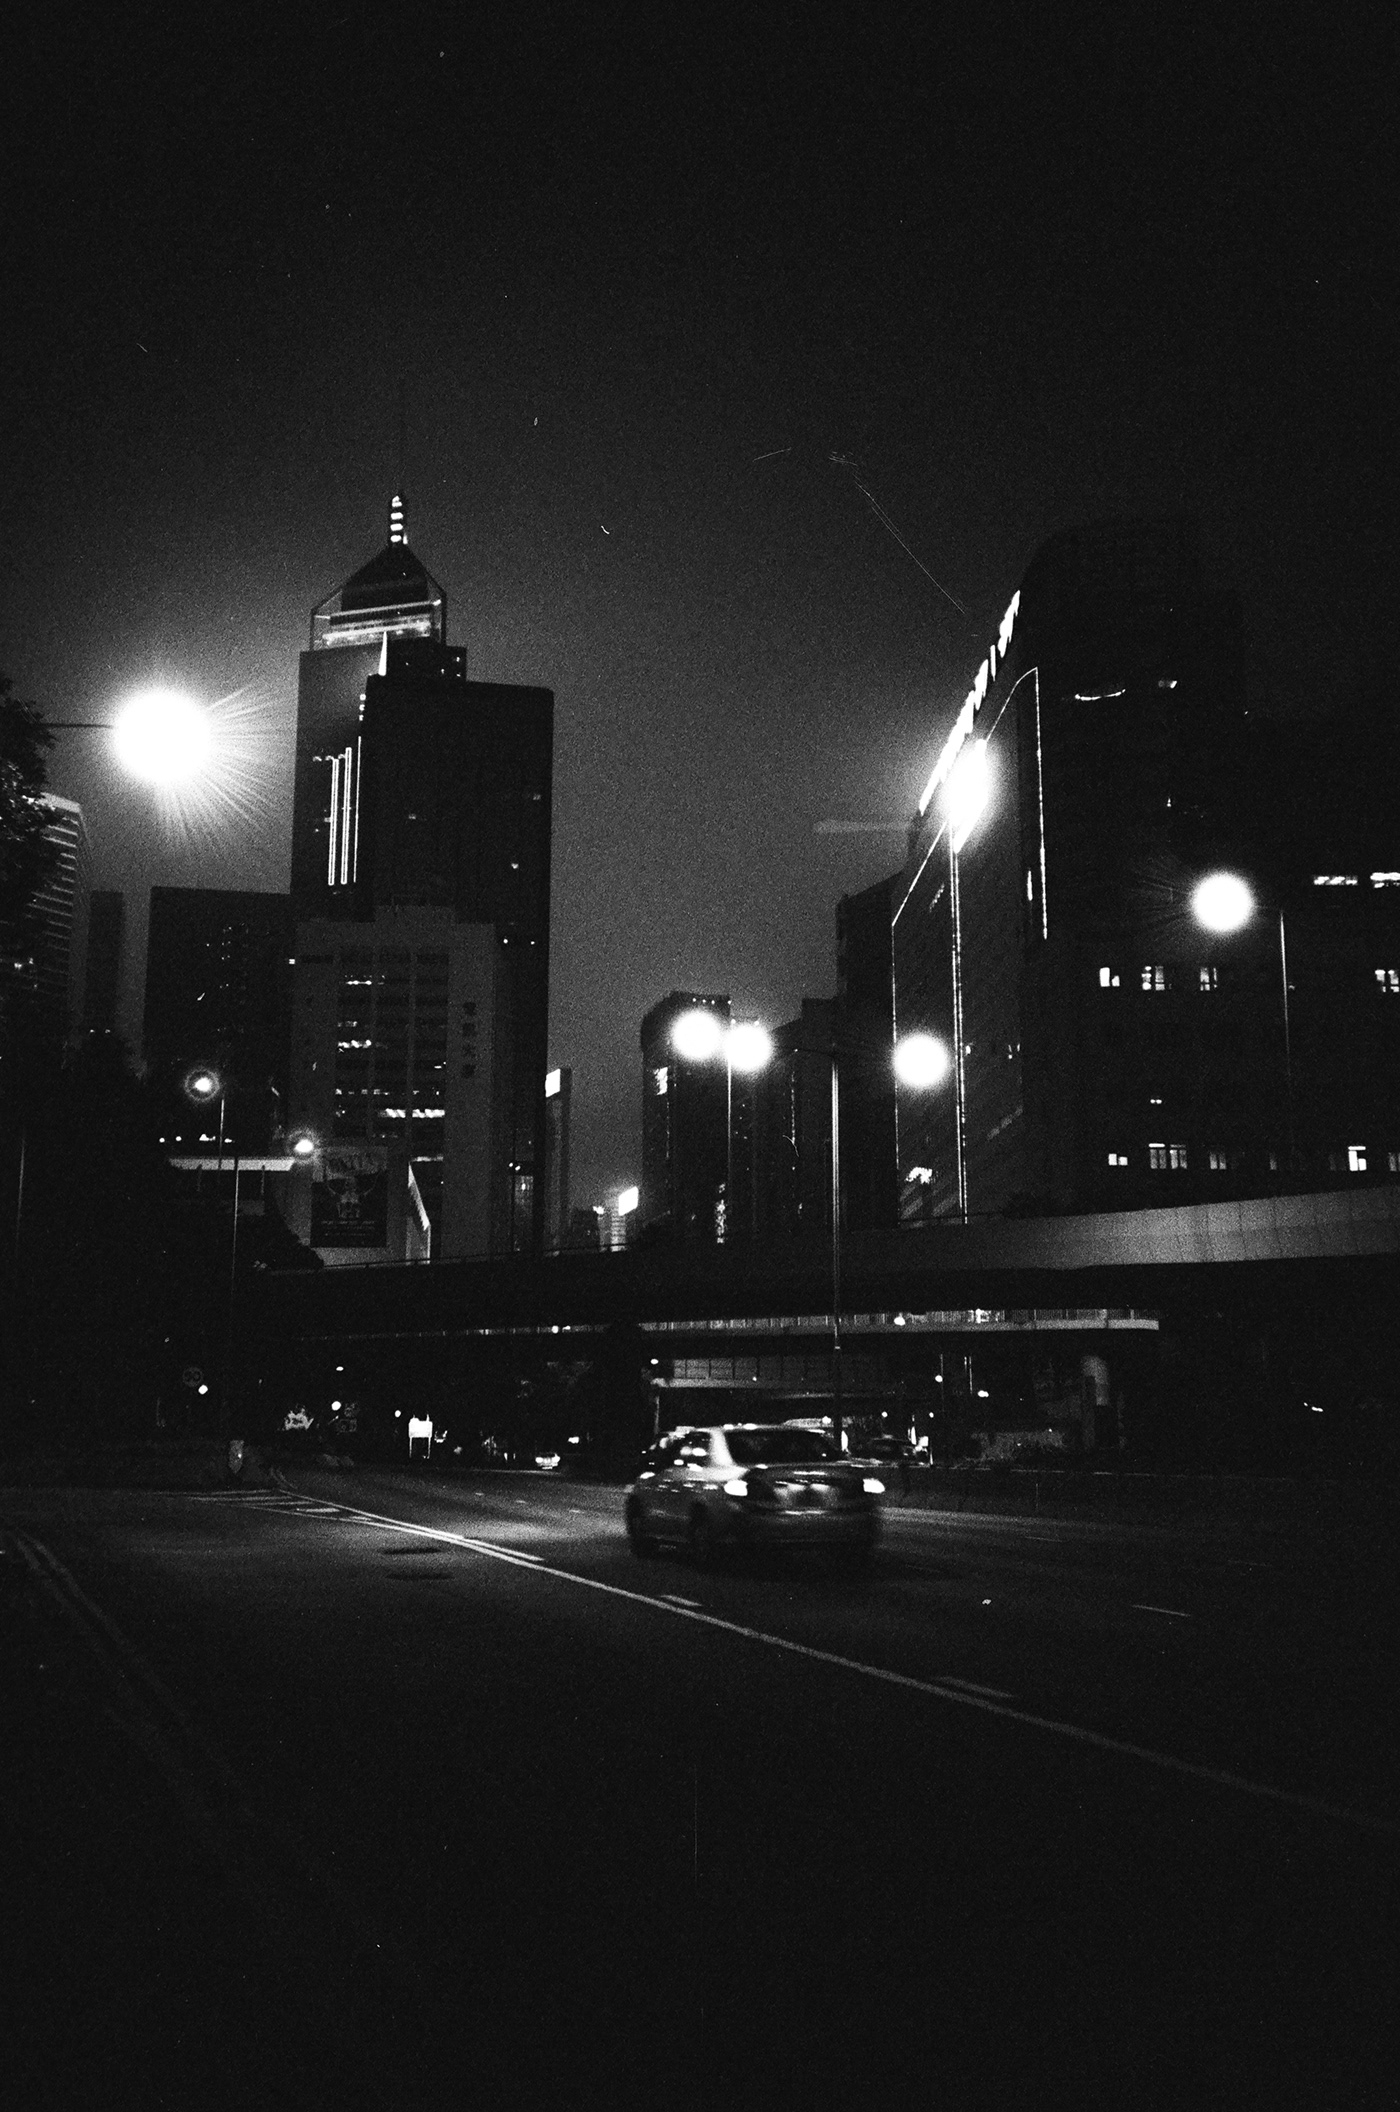 hongkong olympus Analogue Street black White Day night